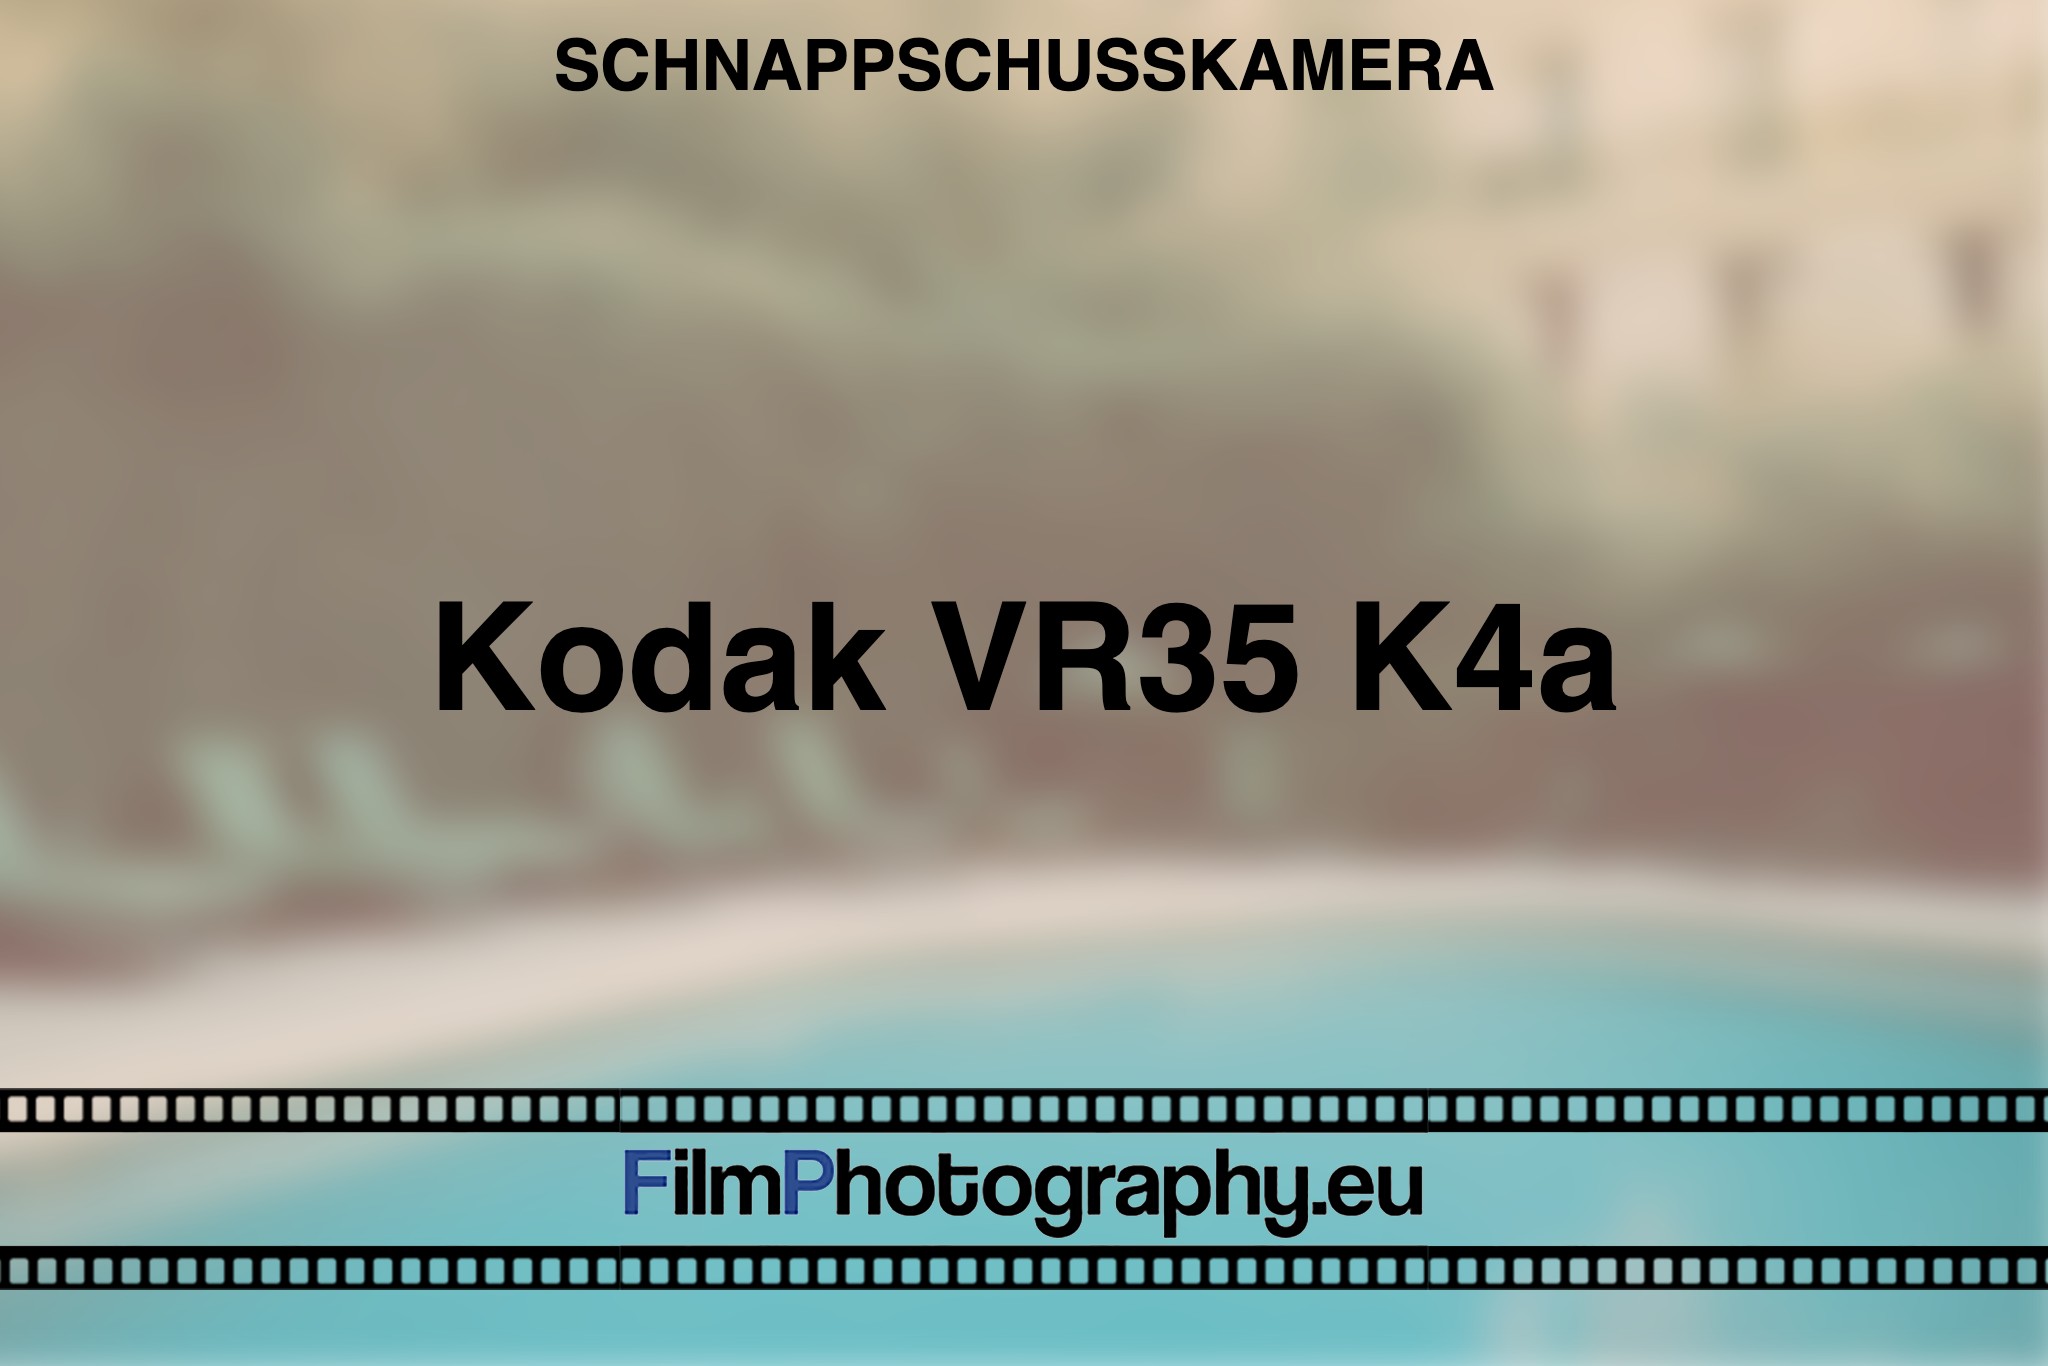 kodak-vr35-k4a-schnappschusskamera-bnv